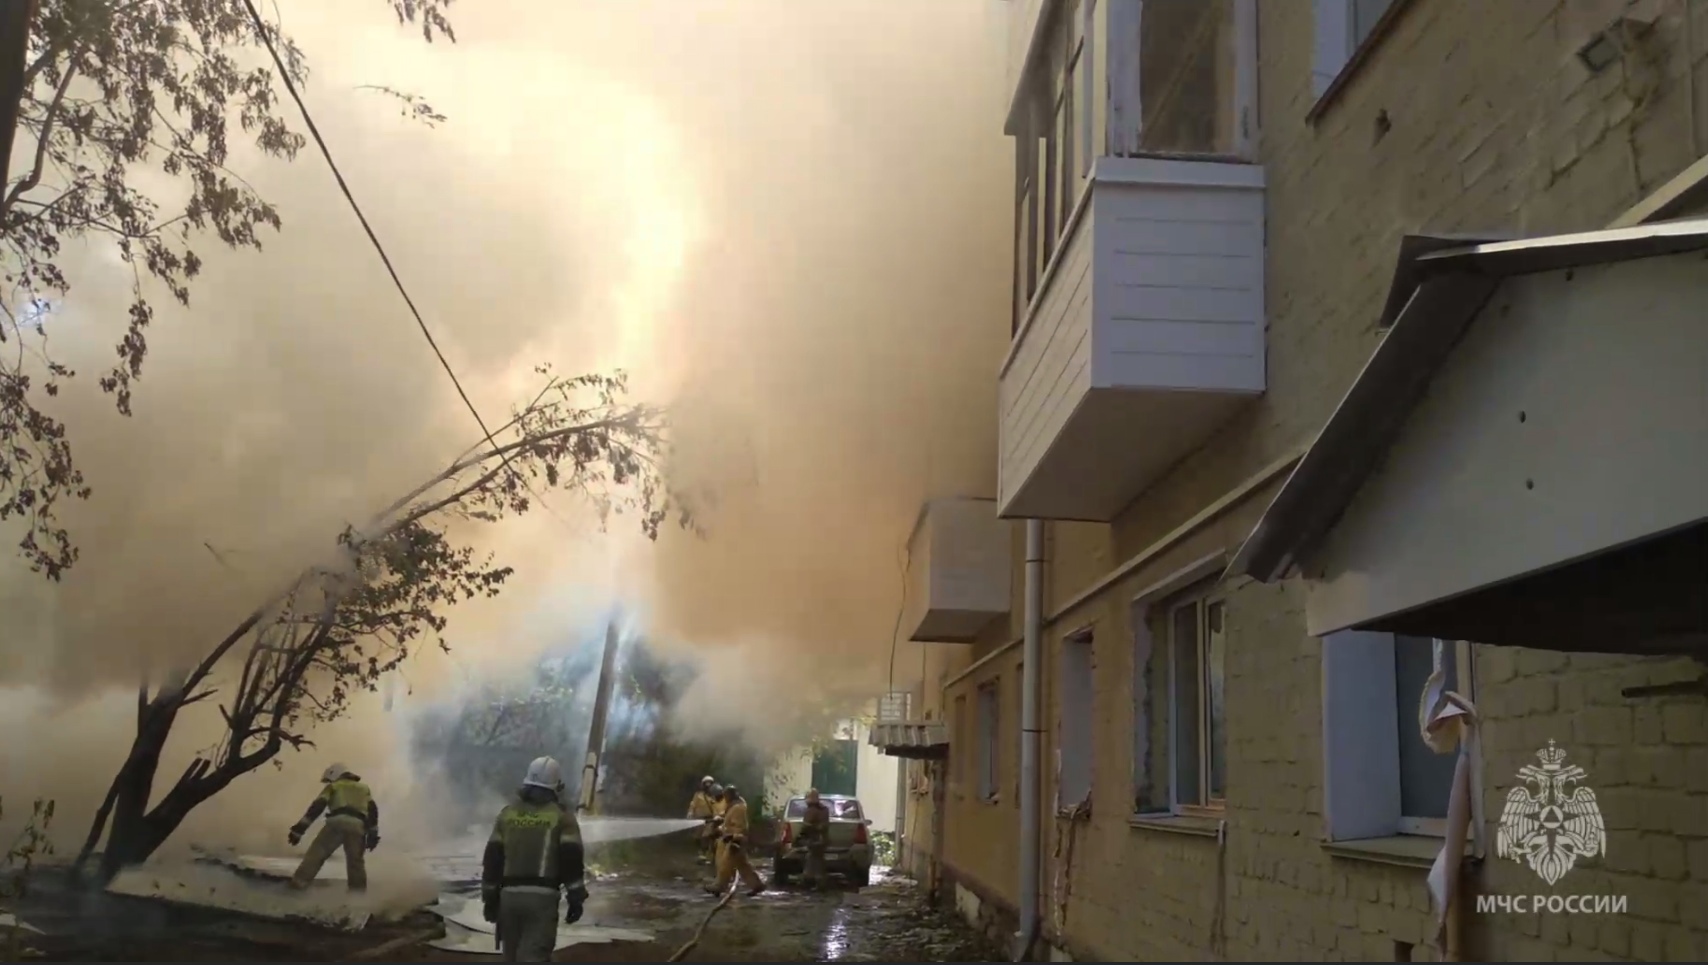 В Кирове за один день произошло два пожара, в районах области – еще семь